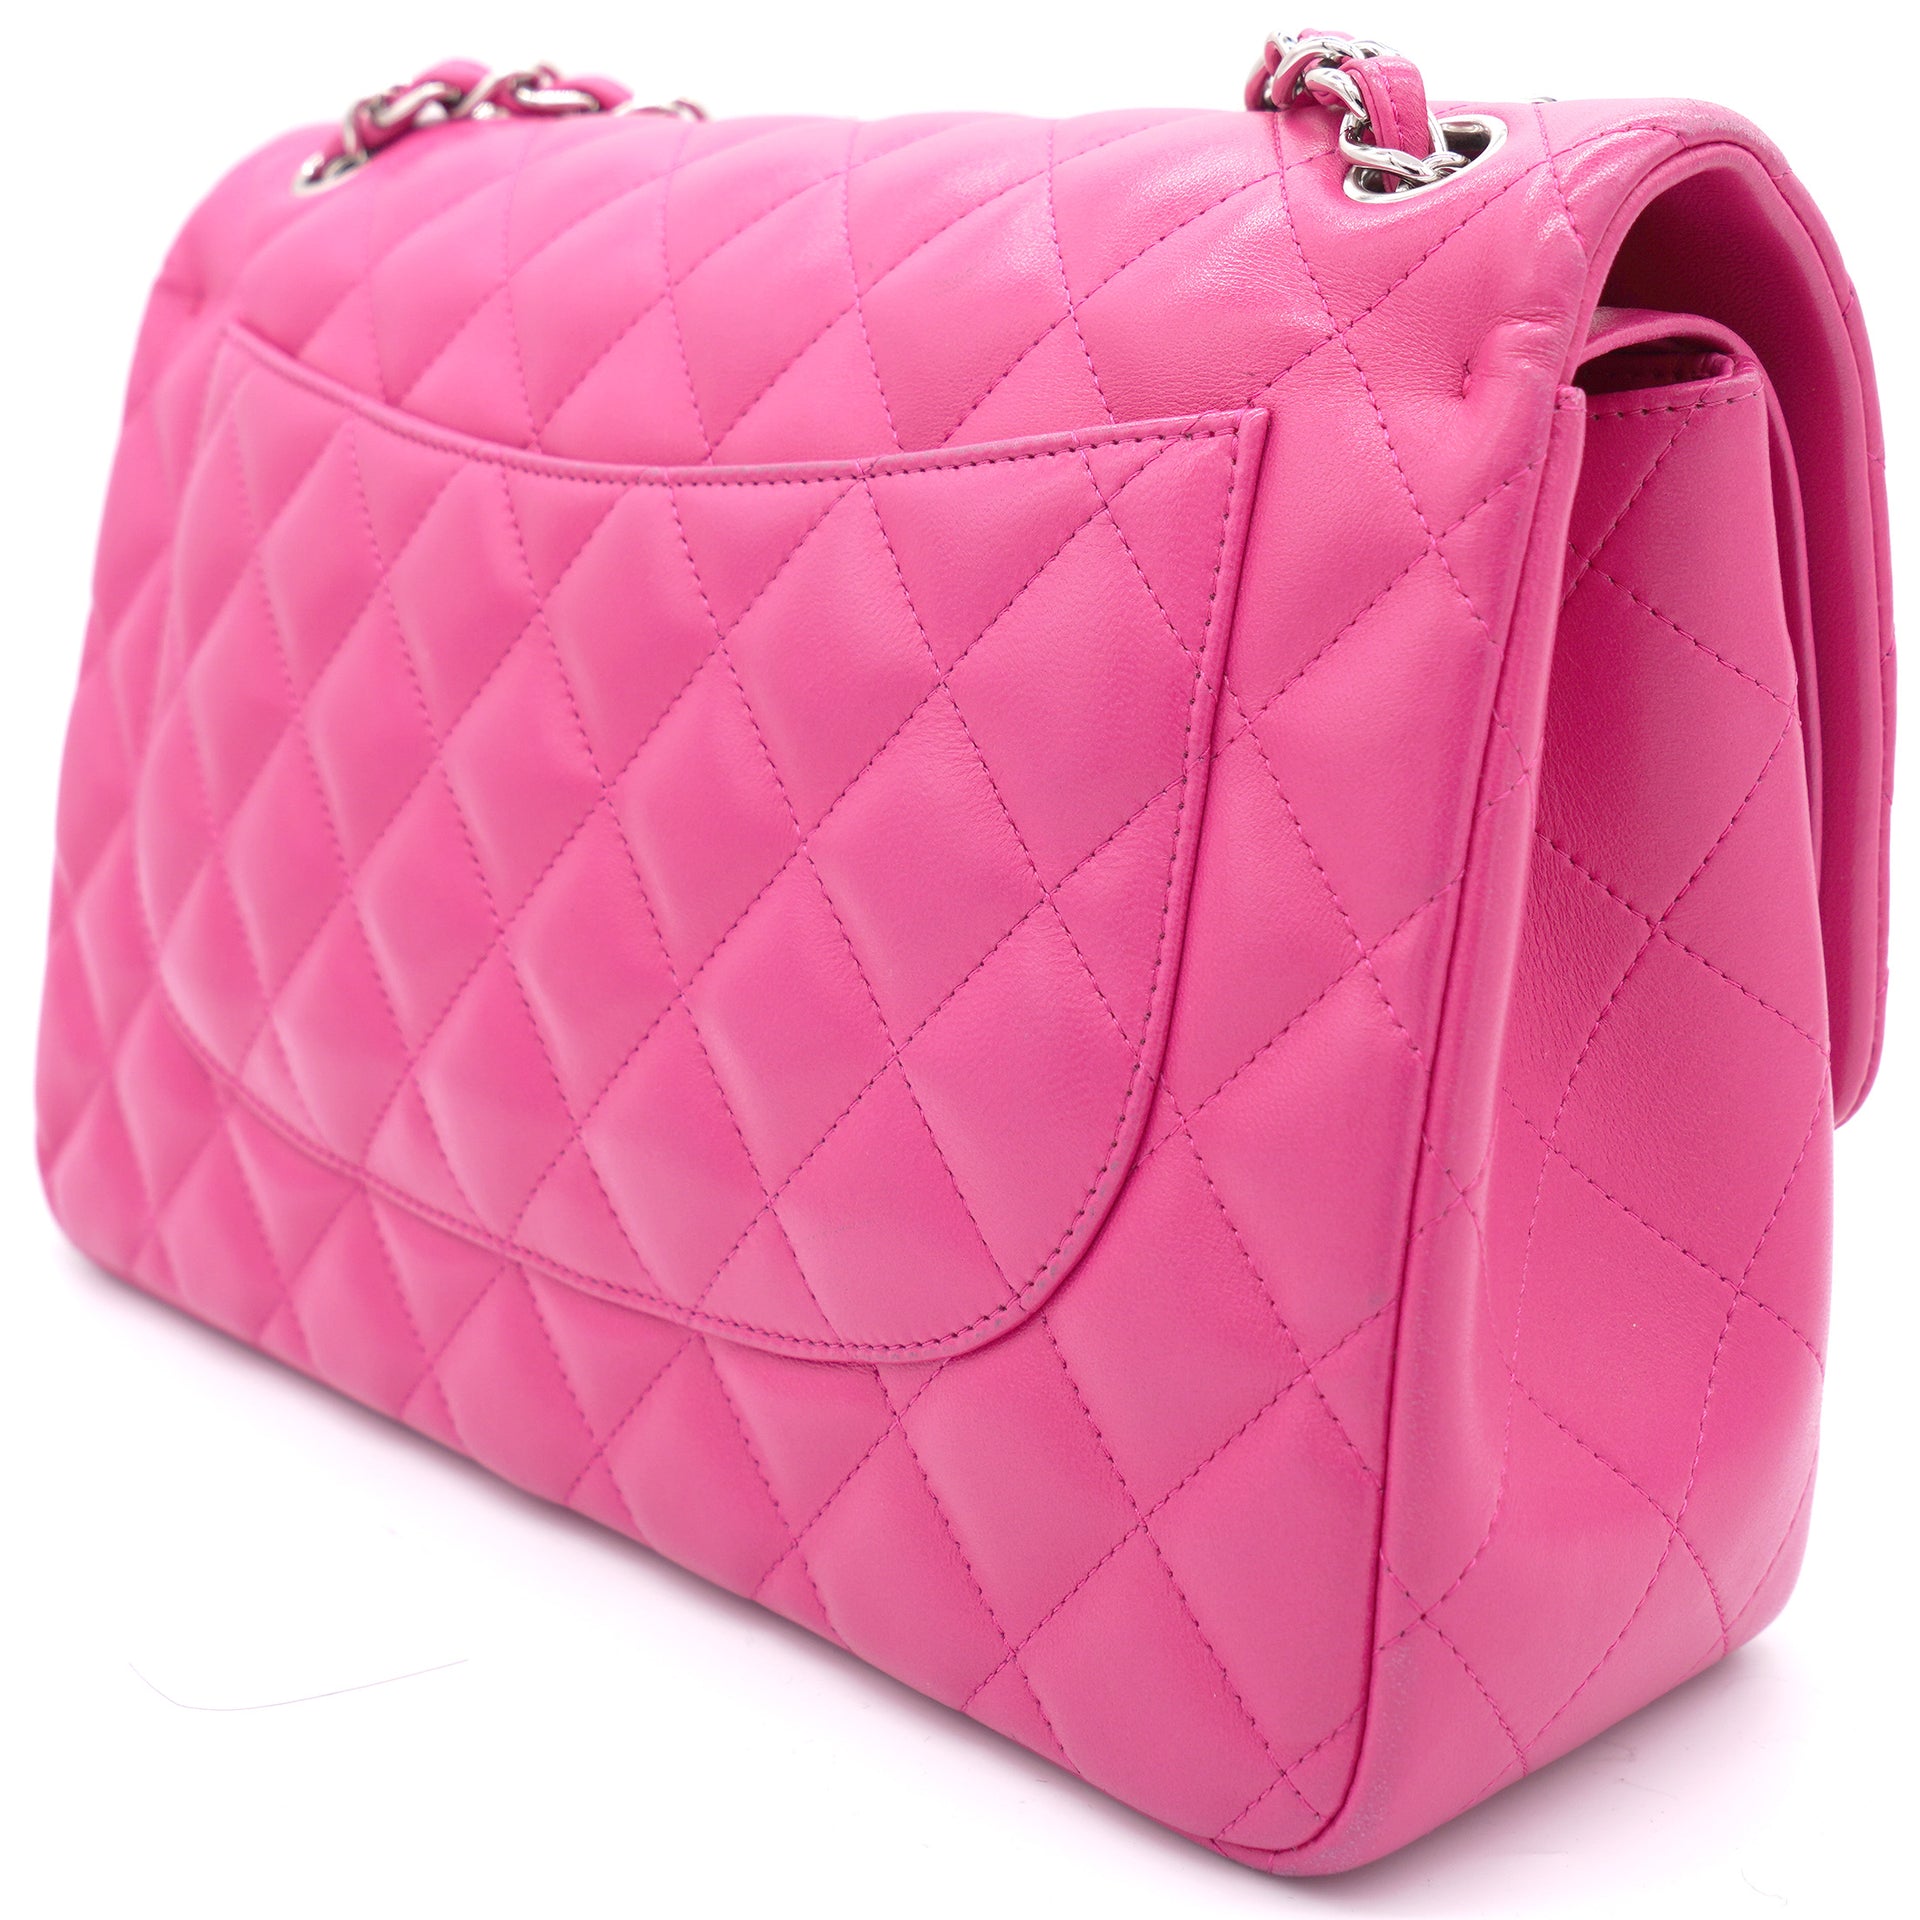 Chanel Pink Handbag  Etsy